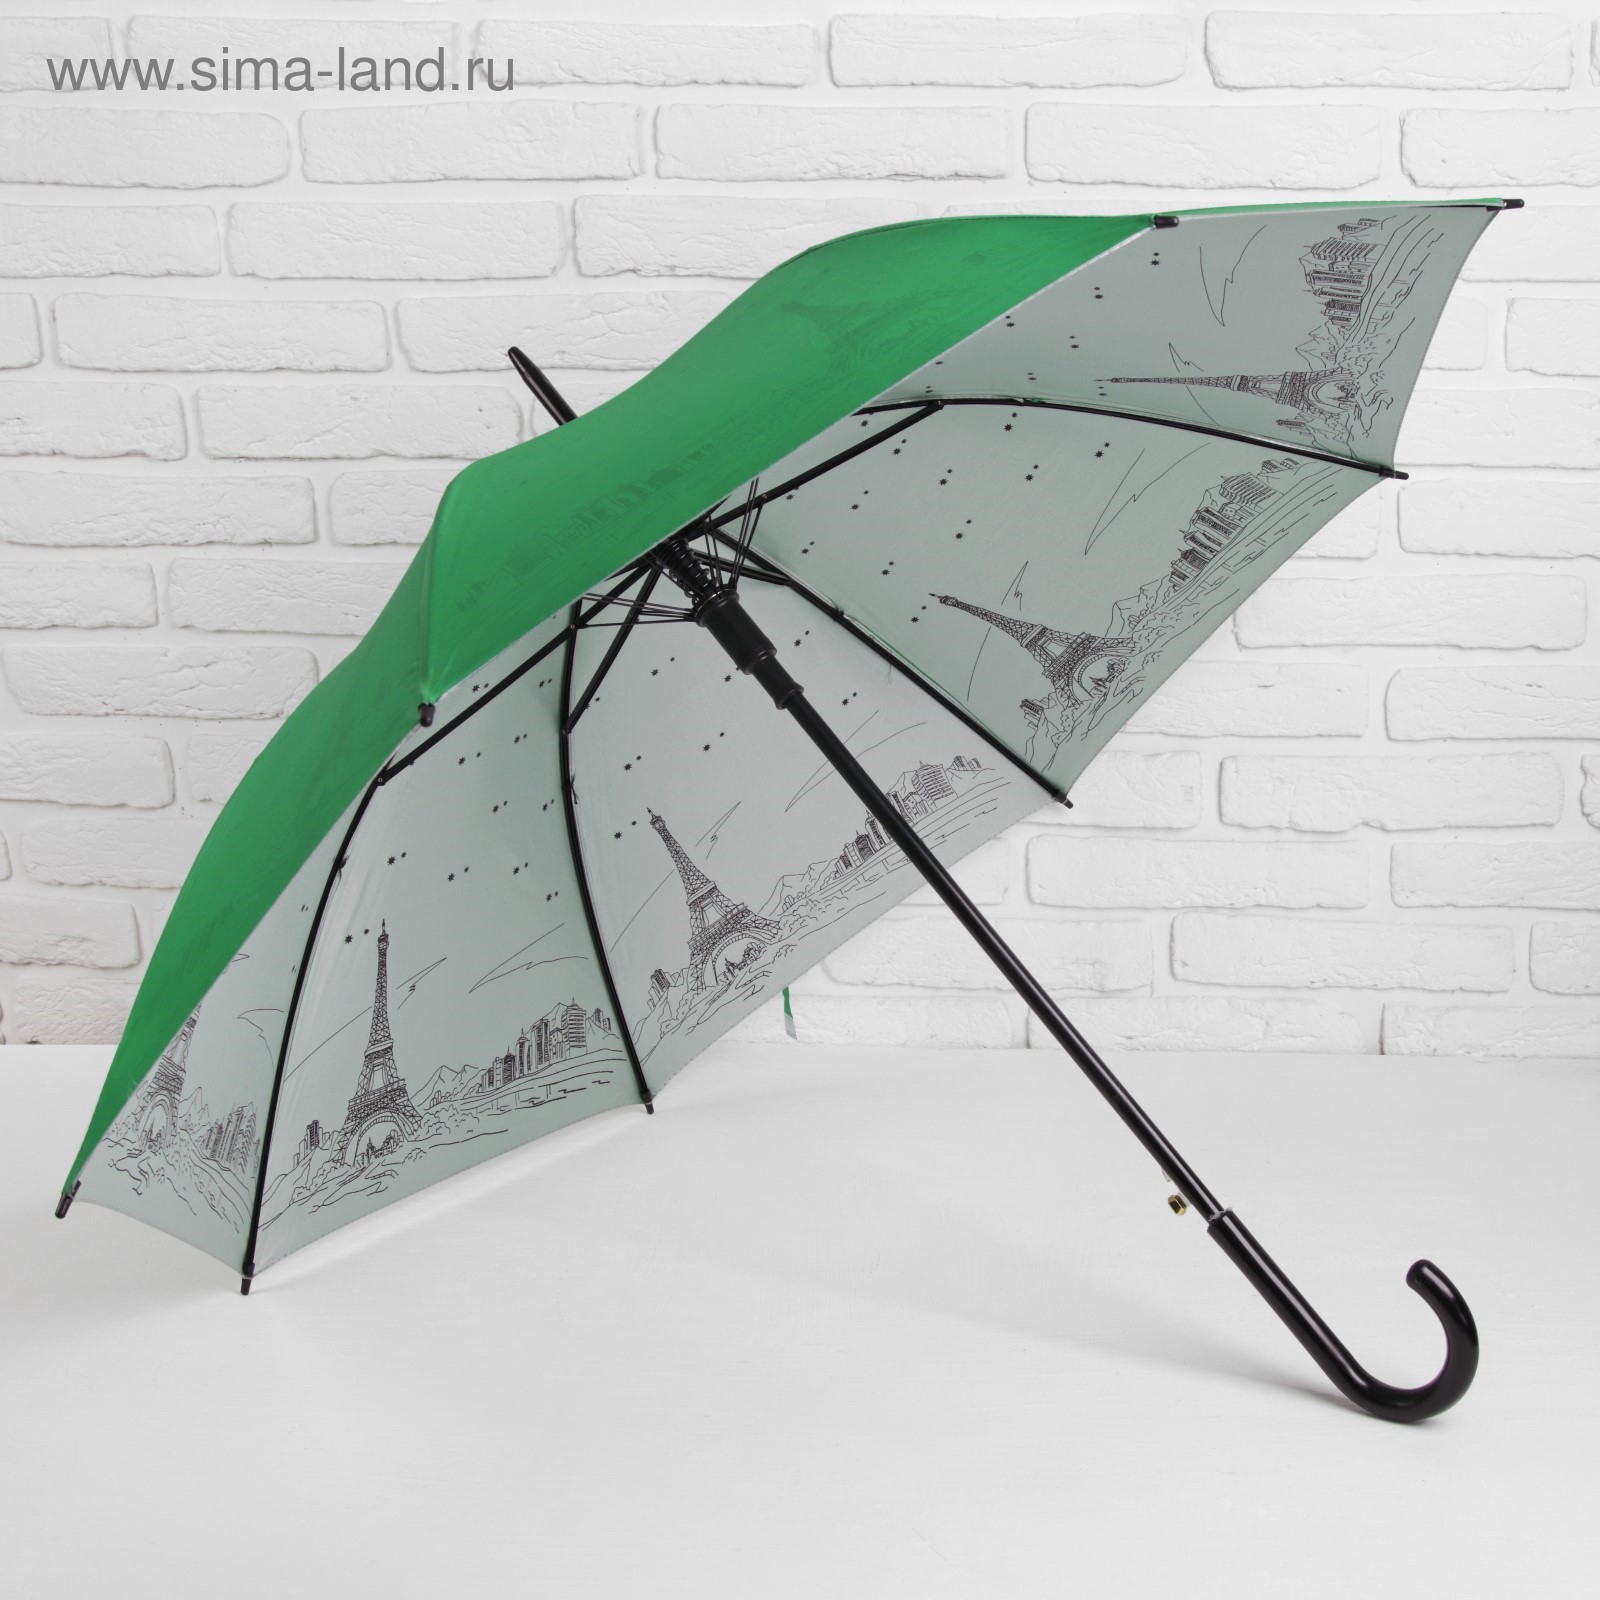 Какие зонты самые прочные и надежные отзывы: Рейтинг лучших зонтов .